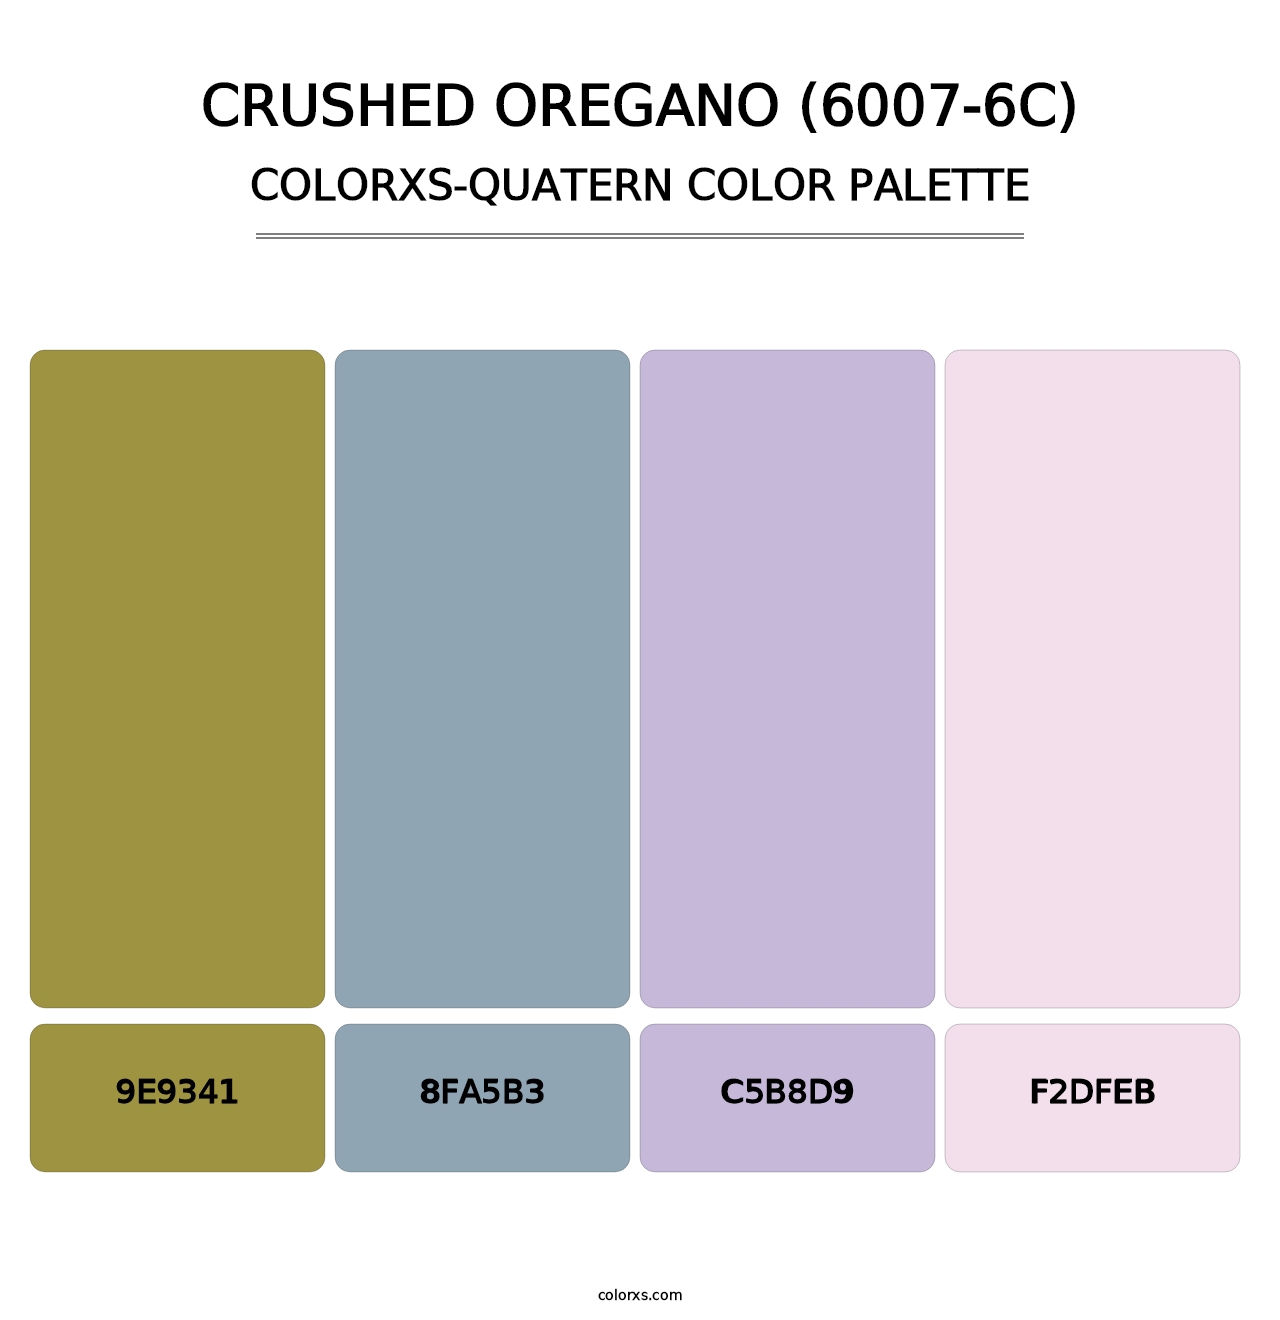 Crushed Oregano (6007-6C) - Colorxs Quatern Palette